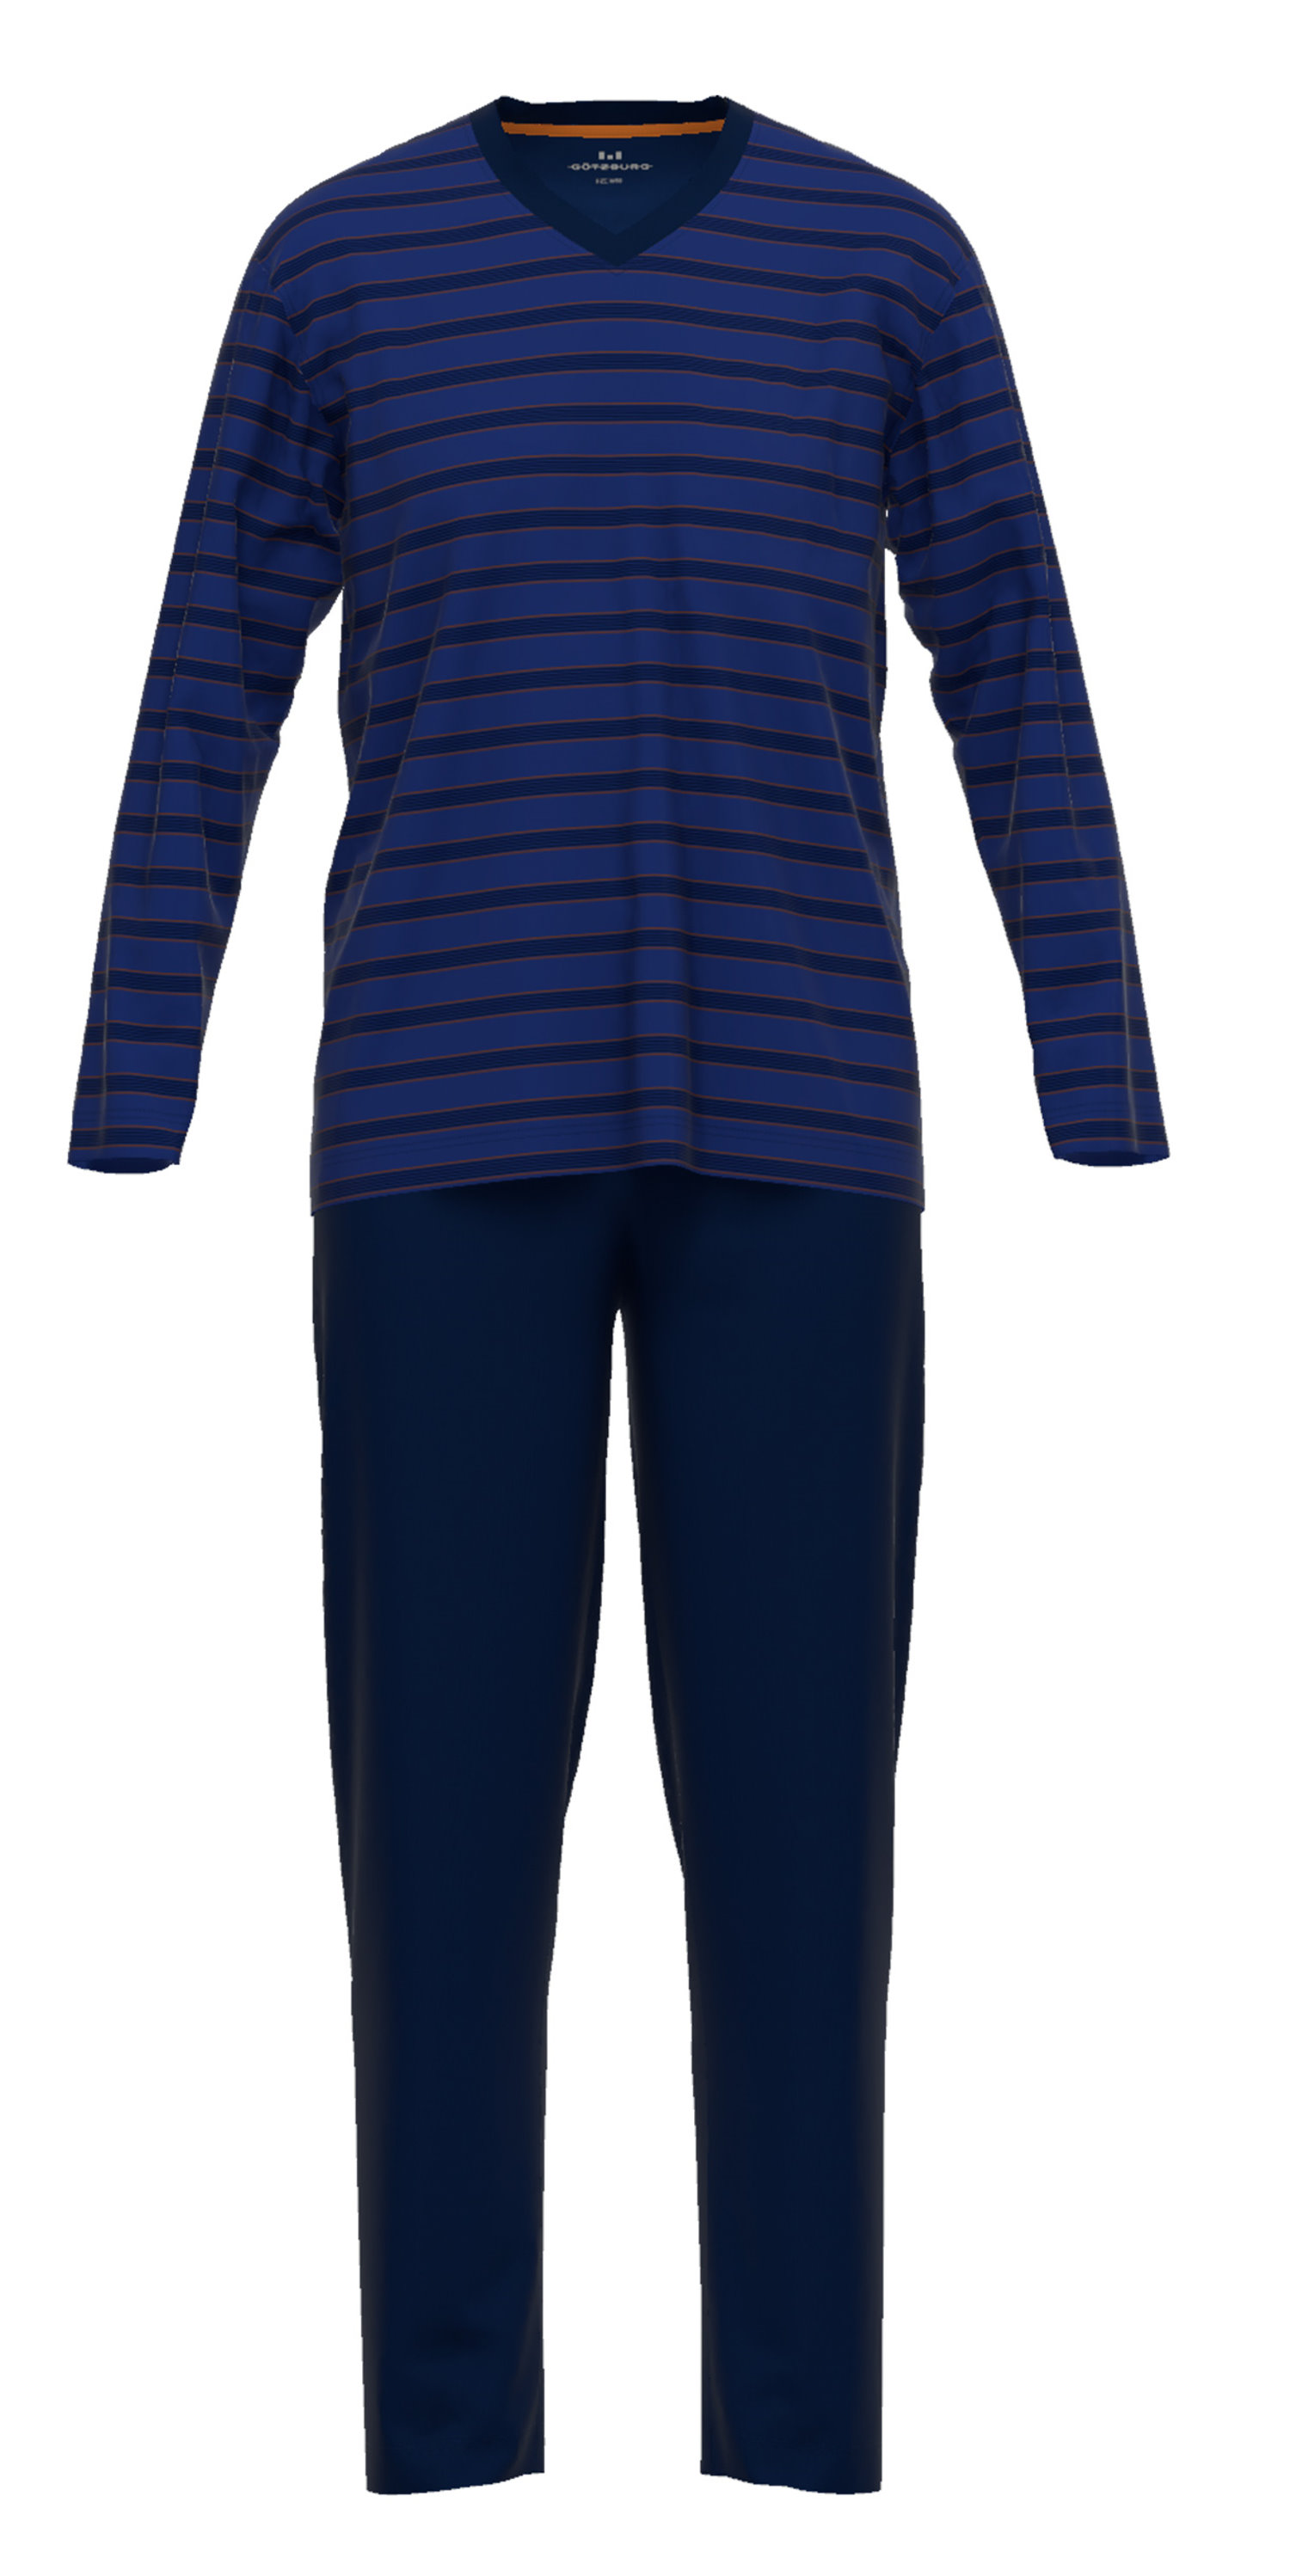 Götzburg Herren Schlafanzug Pyjama Baumwolle Jersey Qualität 452208 652 |  eBay